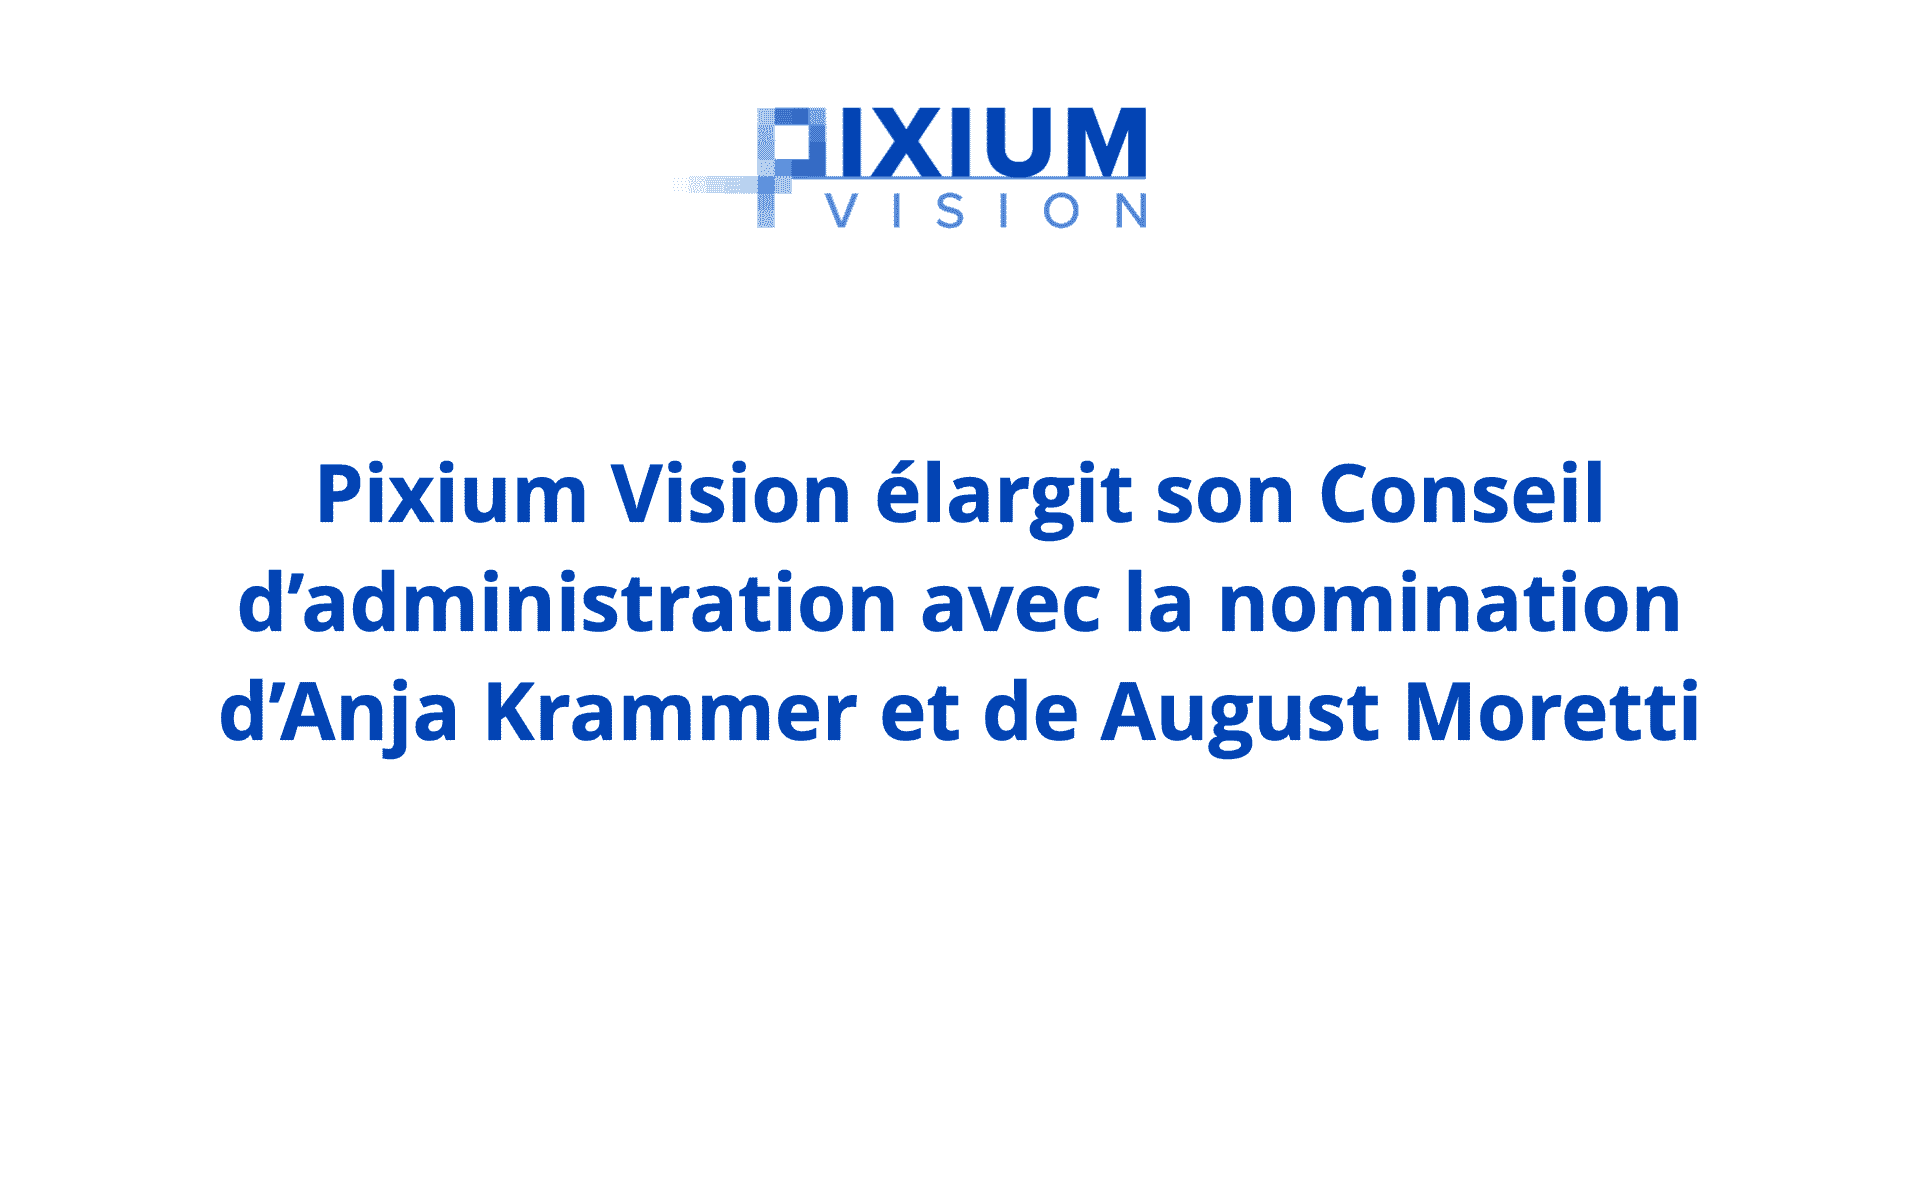 Pixium Vision élargit son Conseil d’administration avec la nomination d’Anja Krammer et de August Moretti